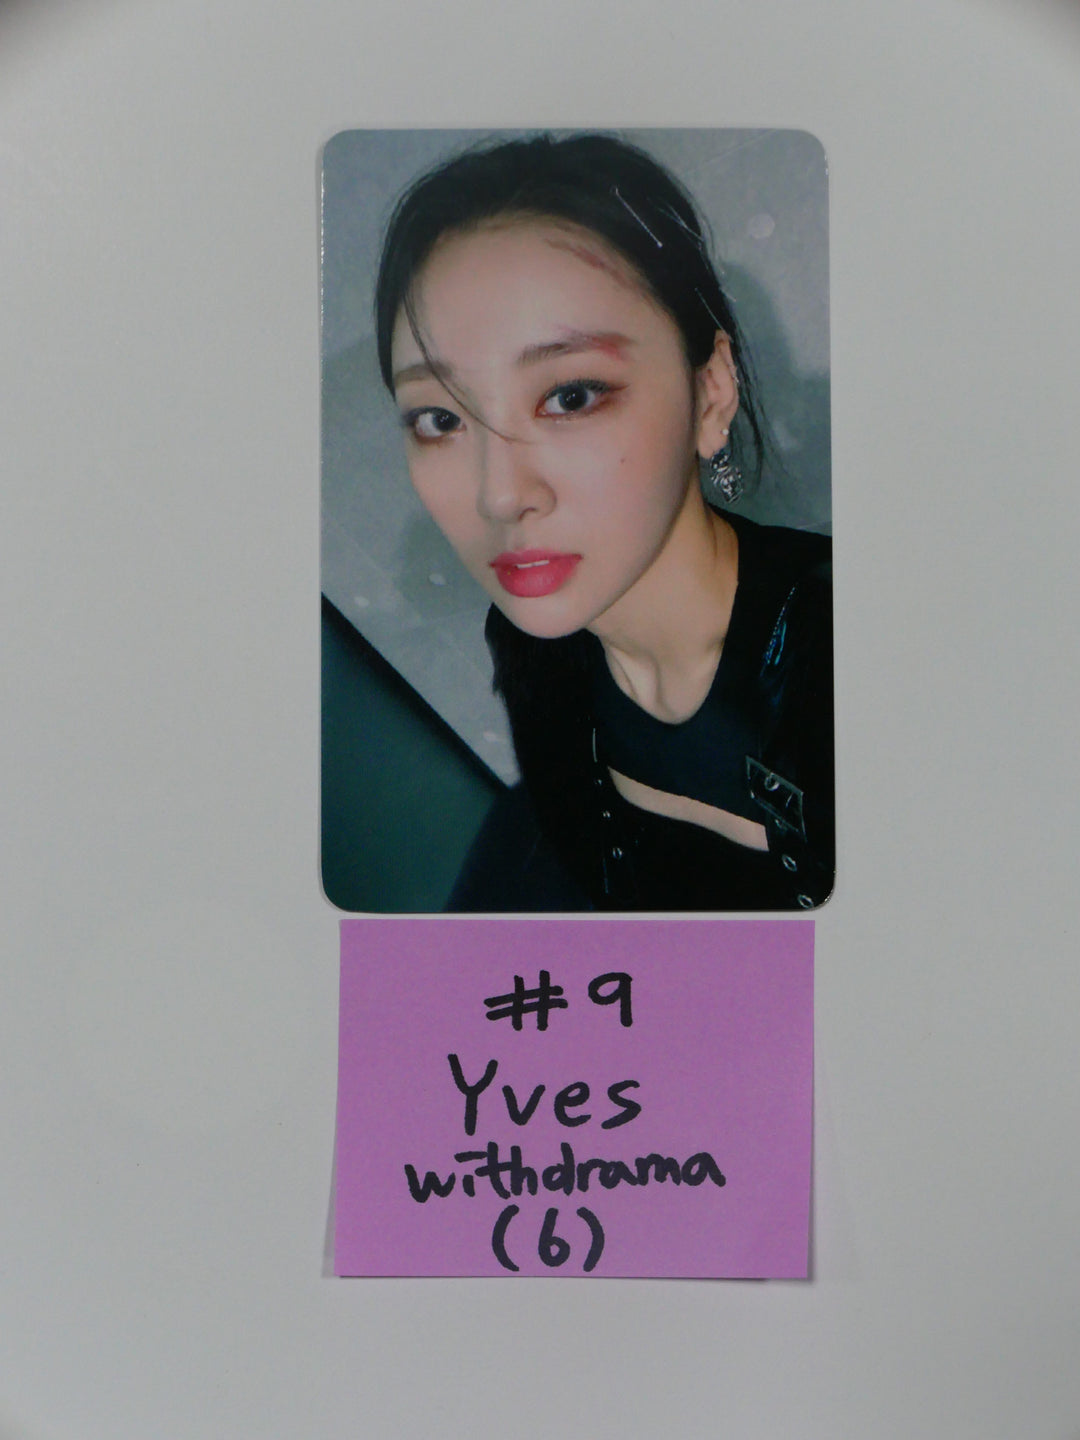 이달의 소녀 '&amp;' - Withdrama 팬사인회 포토카드